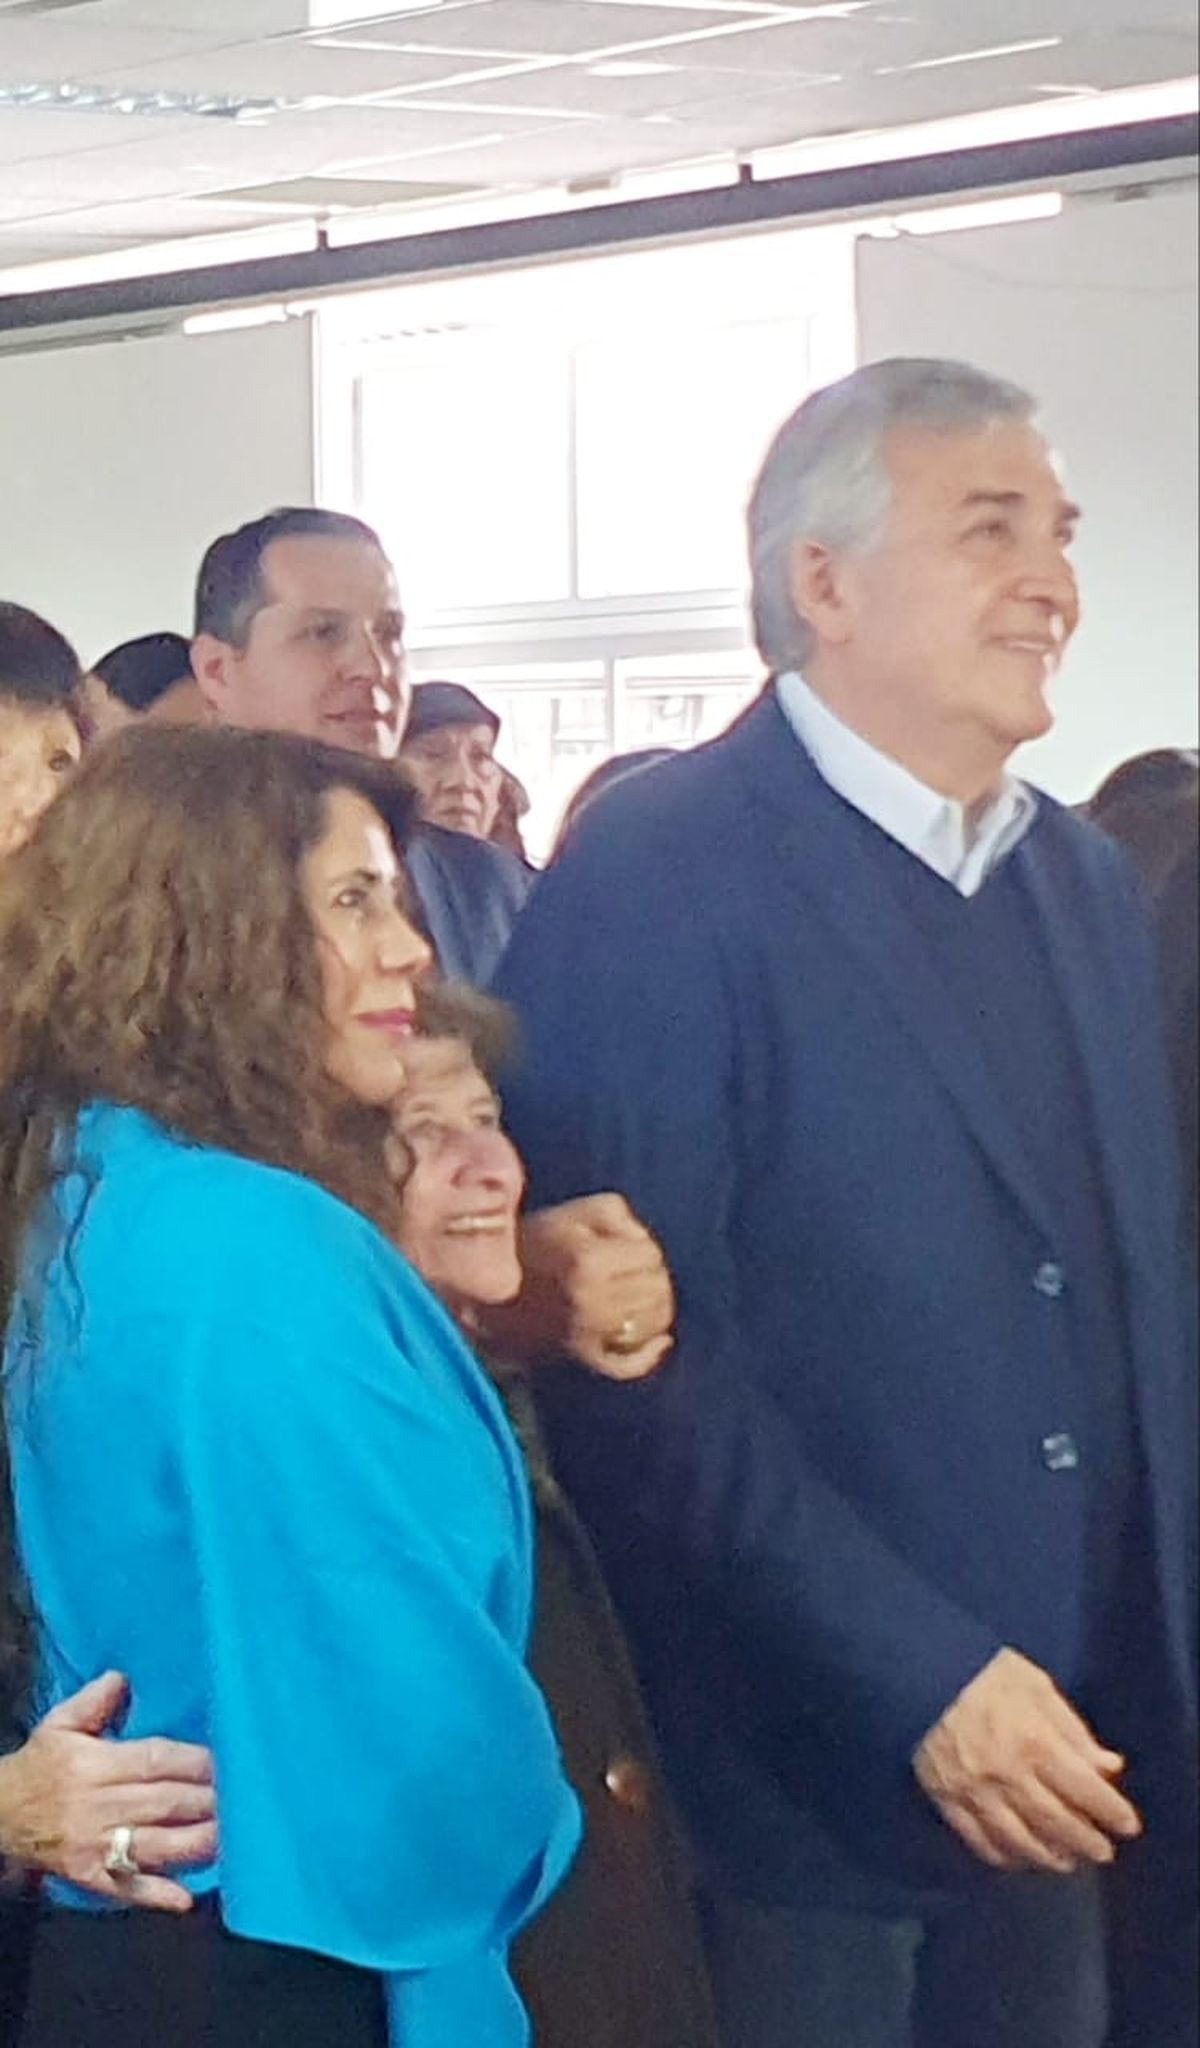 Fortalecimiento a centros de jubilados, pensionados y retirados de Jujuy